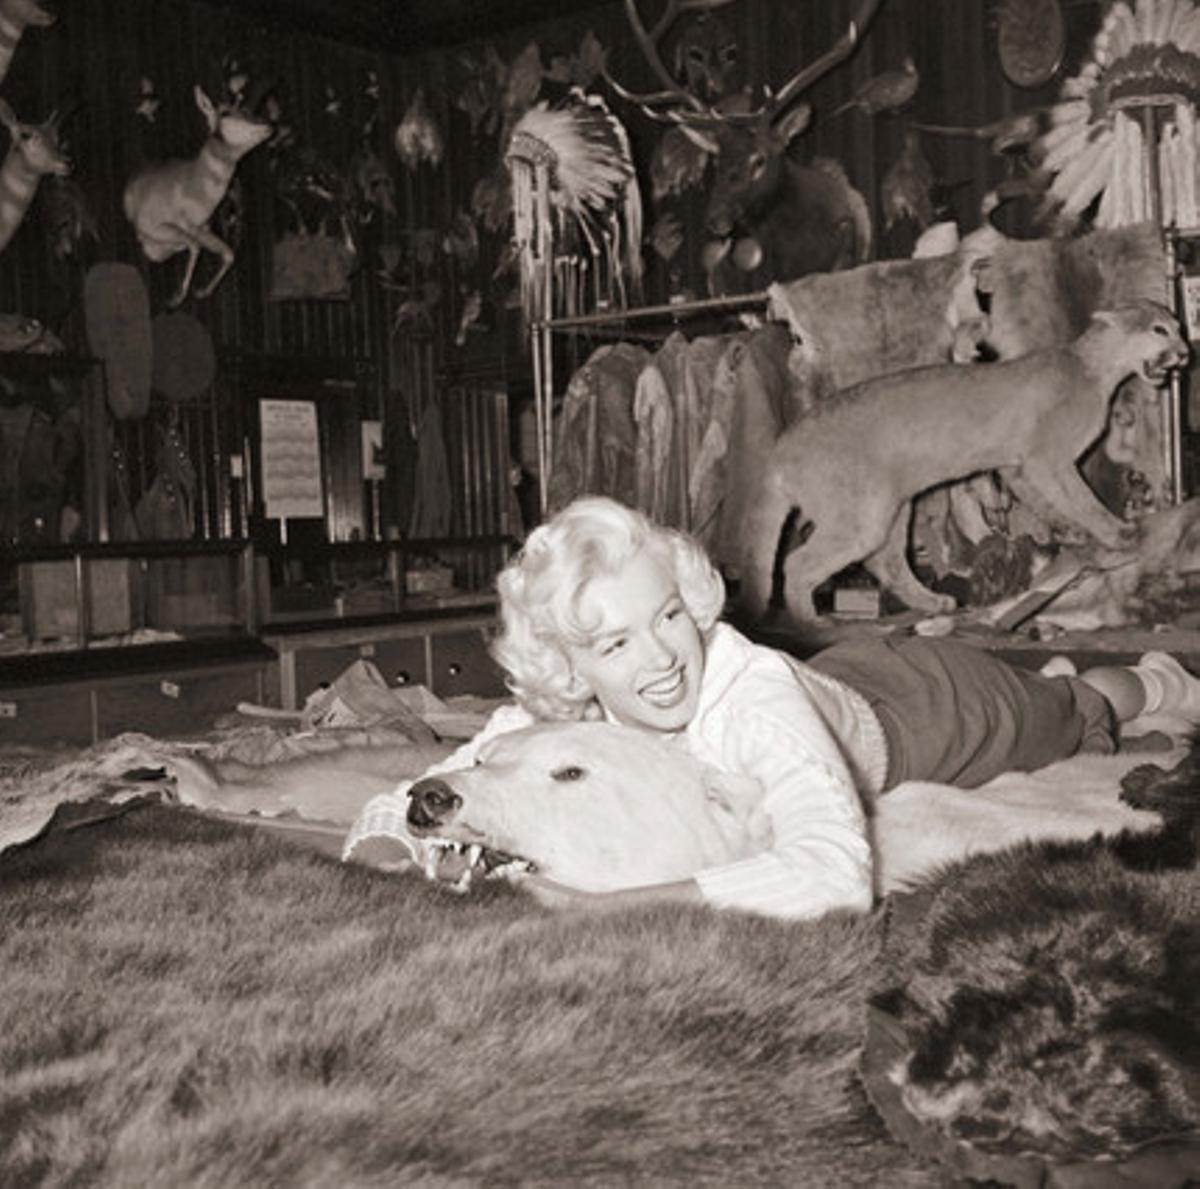 Imagen del libroMarilyn: agosto de 1953, publicado por Calla Editions, que incluye un centenar de fotos inéditas de la actriz. Todas las imágenes del libro fueron tomadas durante el verano de 1953 en Alberta, Canadá, cuando la actriz tenía 27 años.